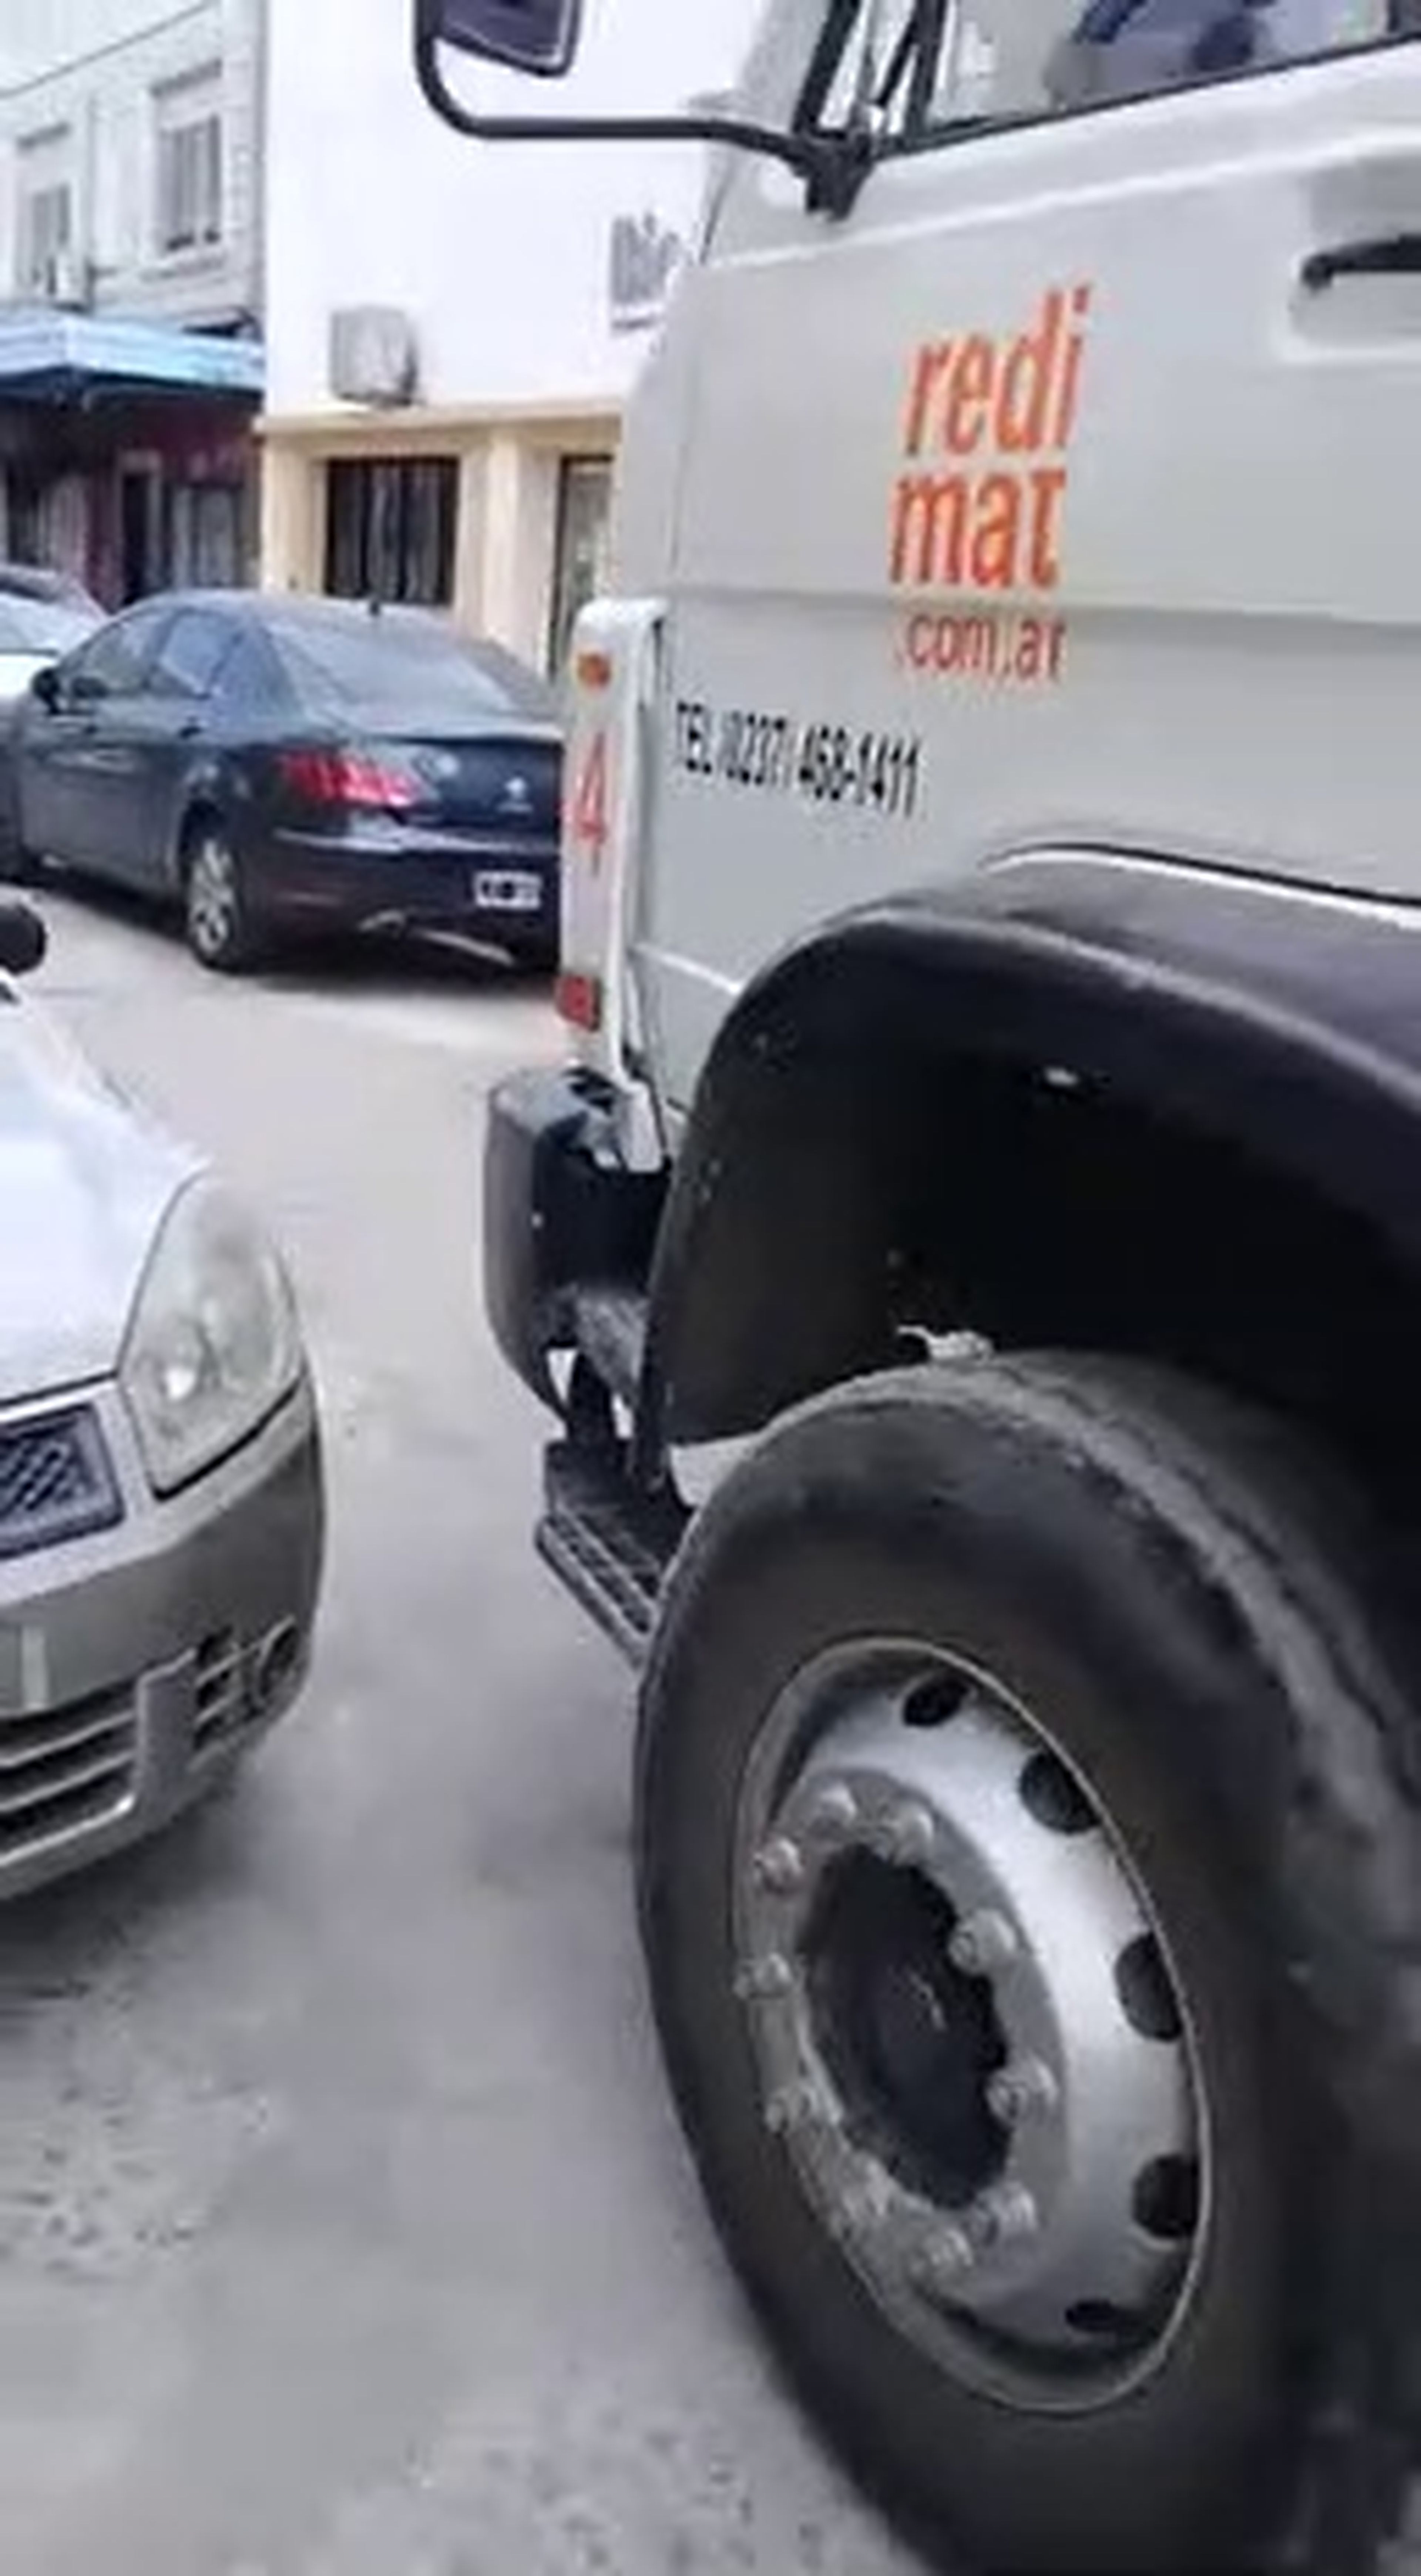 VÍDEO: Un camionero no tiene piedad con un coche mal aparcado